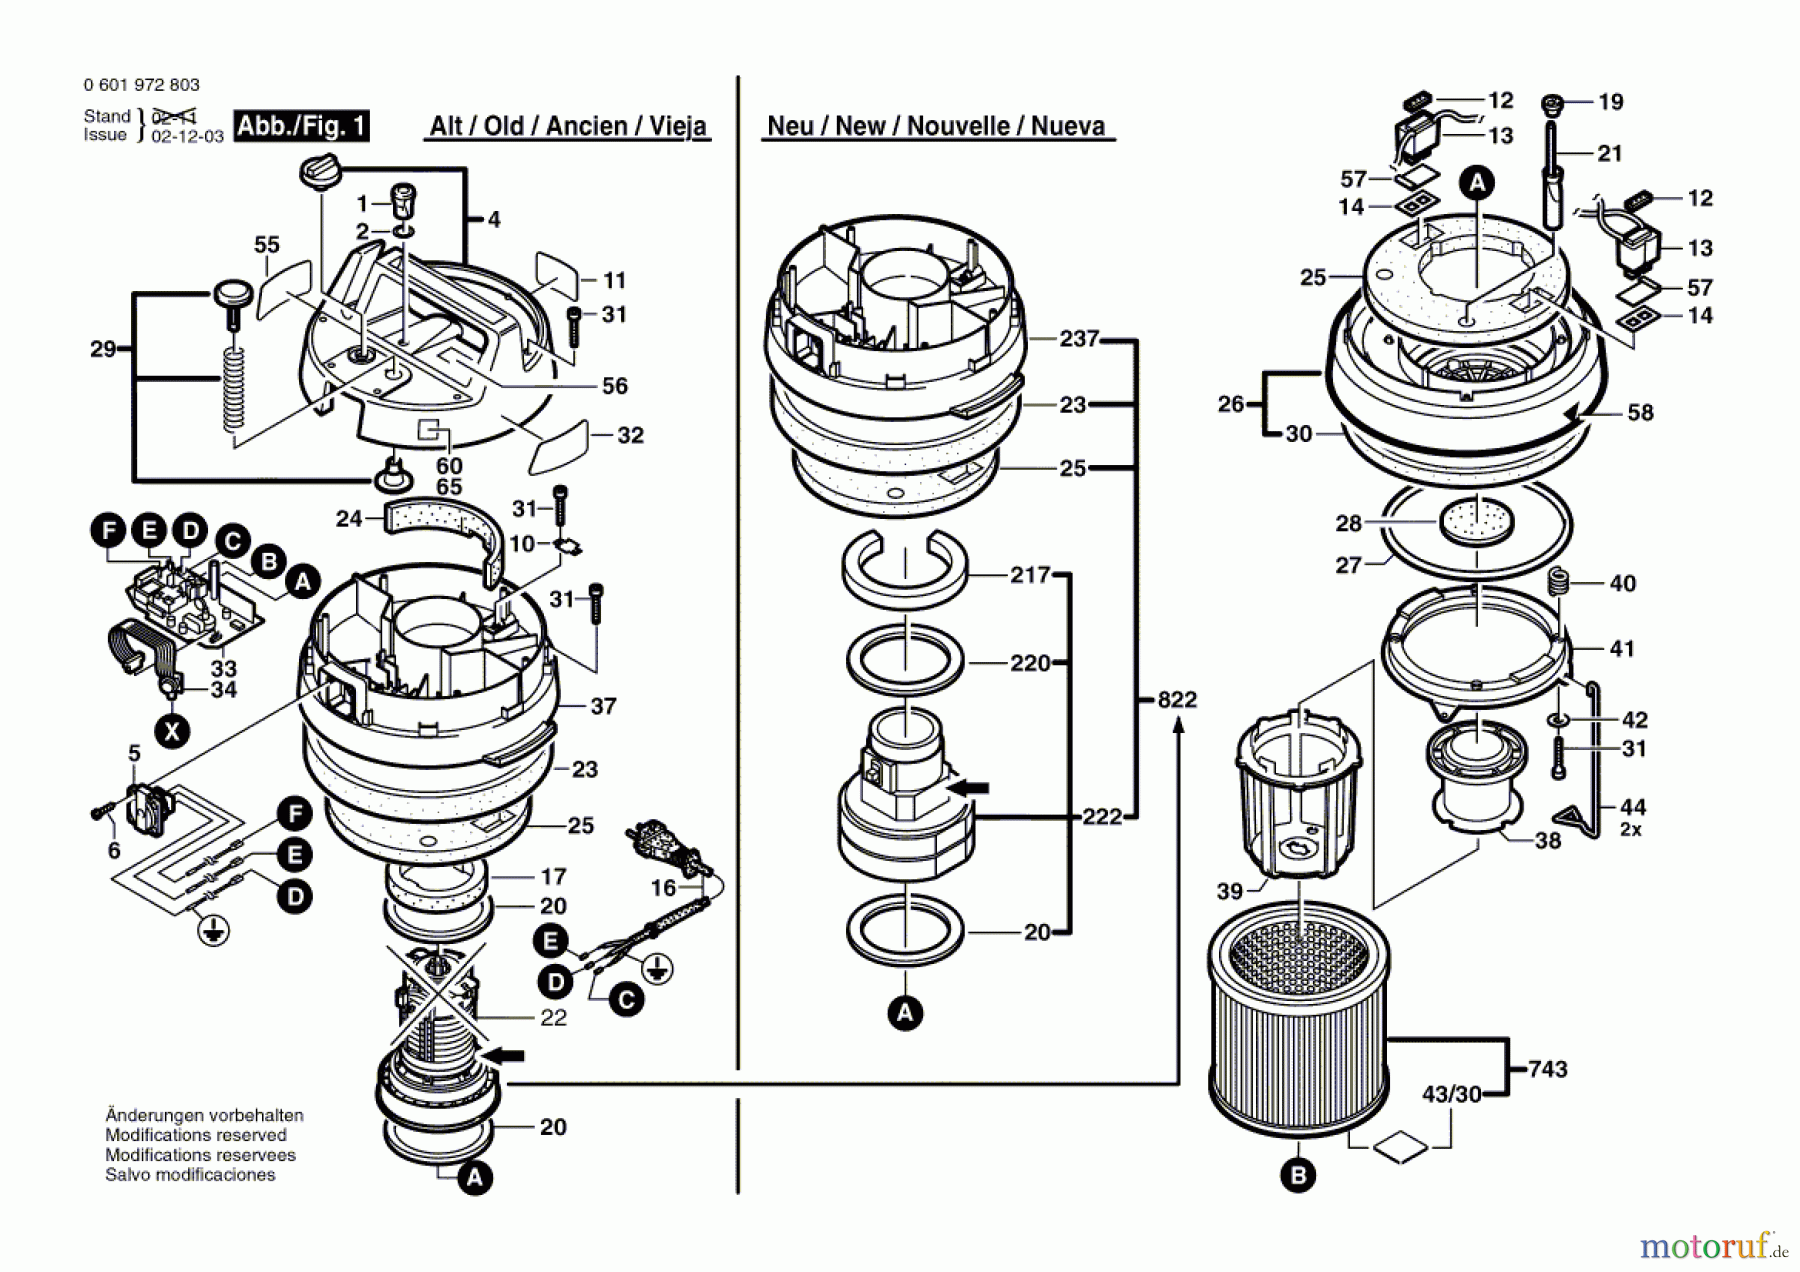  Bosch Werkzeug Allzwecksauger GAS 12-50 RFH Seite 1